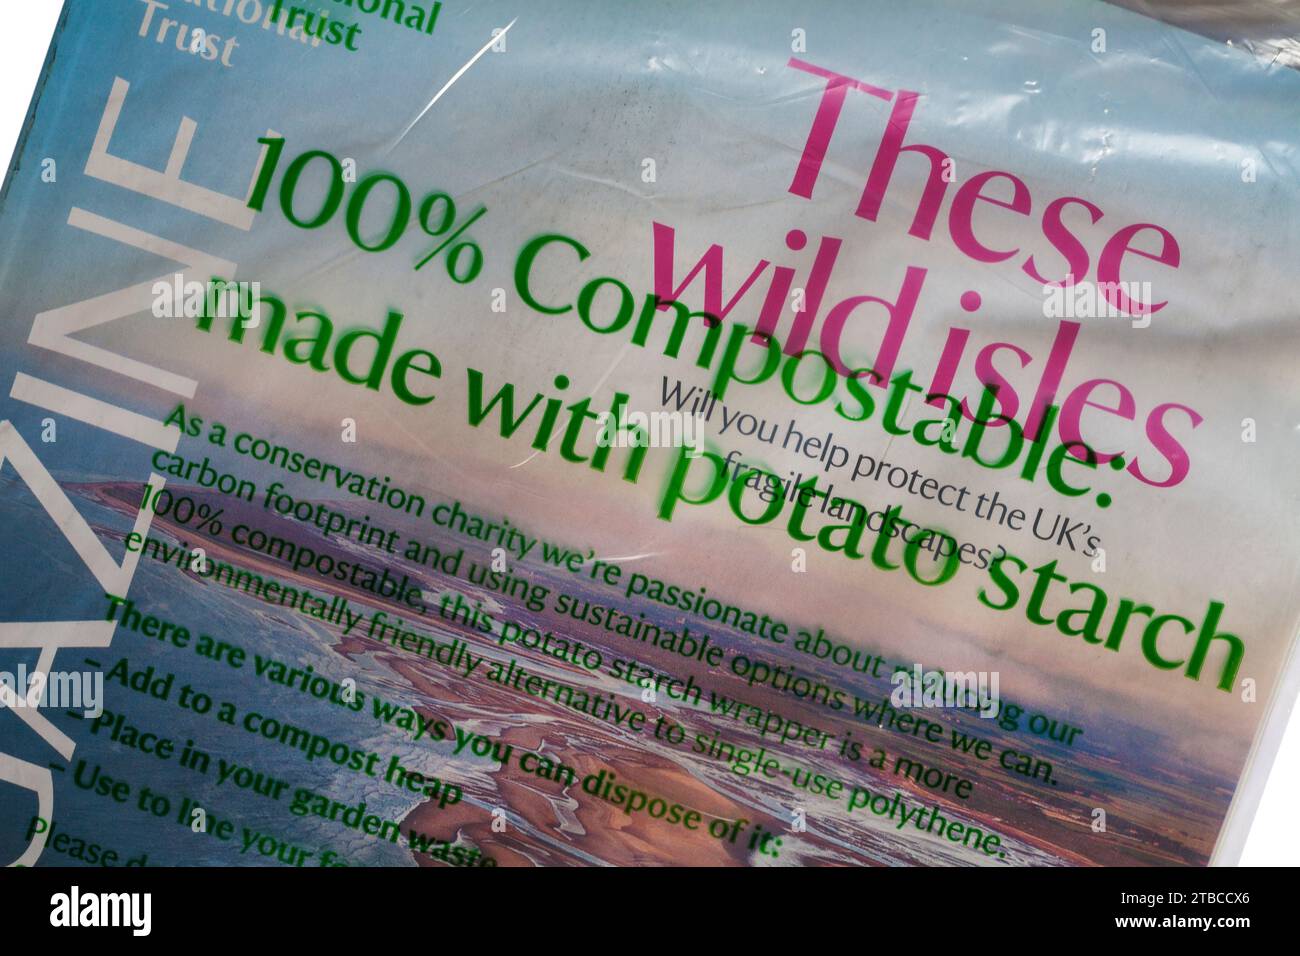 100% compostabile con fecola di patate - confezionamento su rivista National Trust Foto Stock